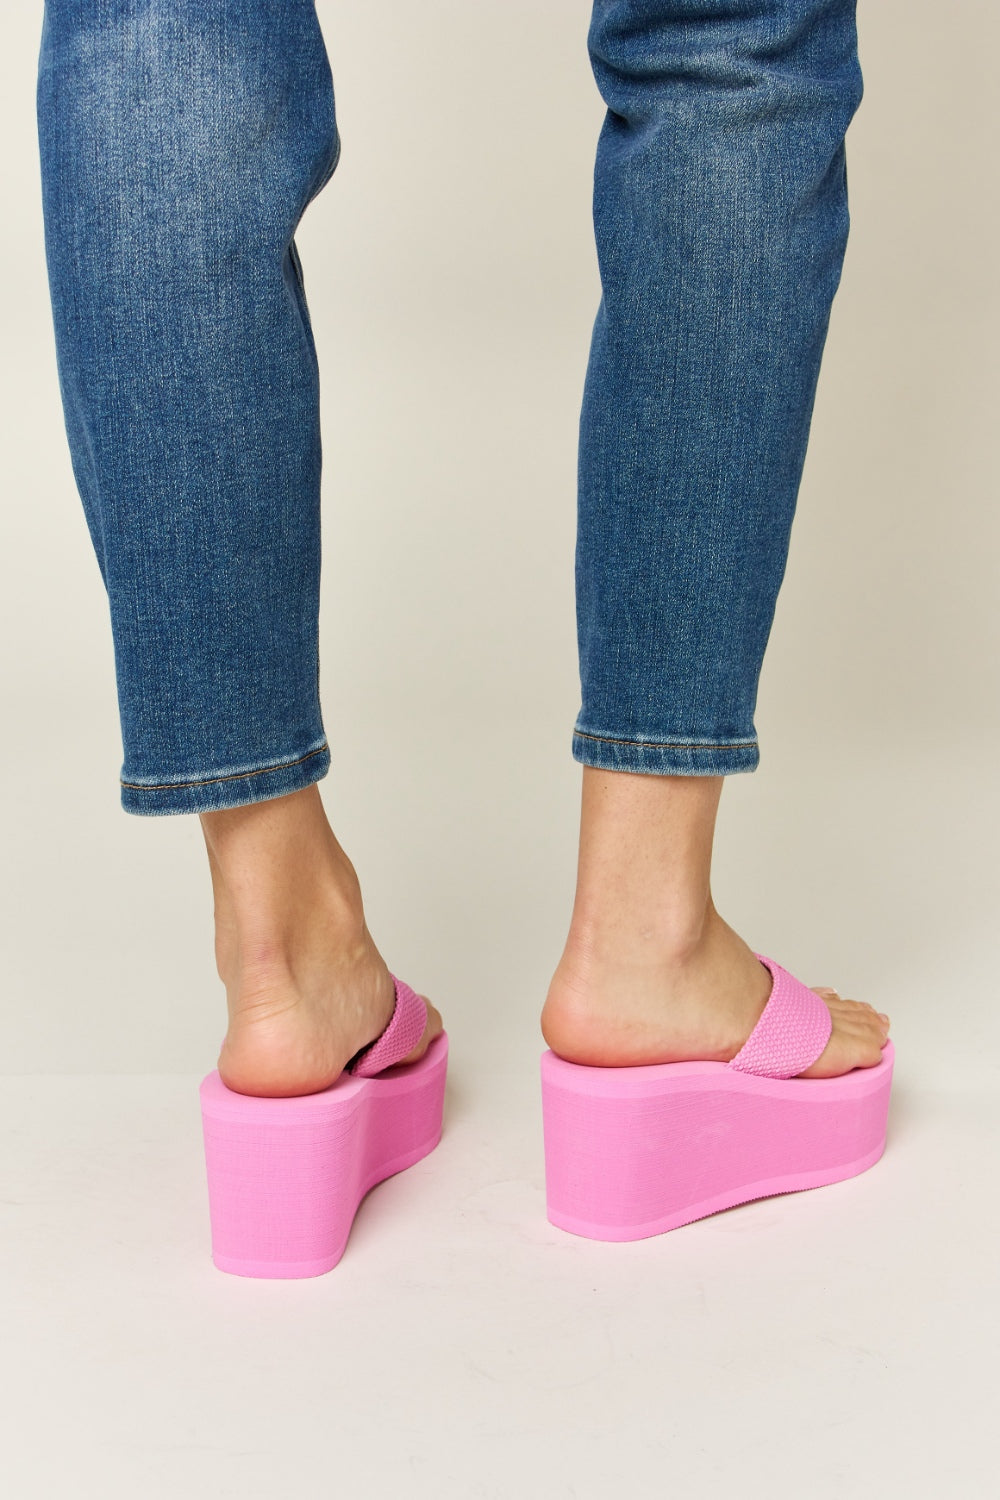 Pretty in Pink Platform Wedge Sandals